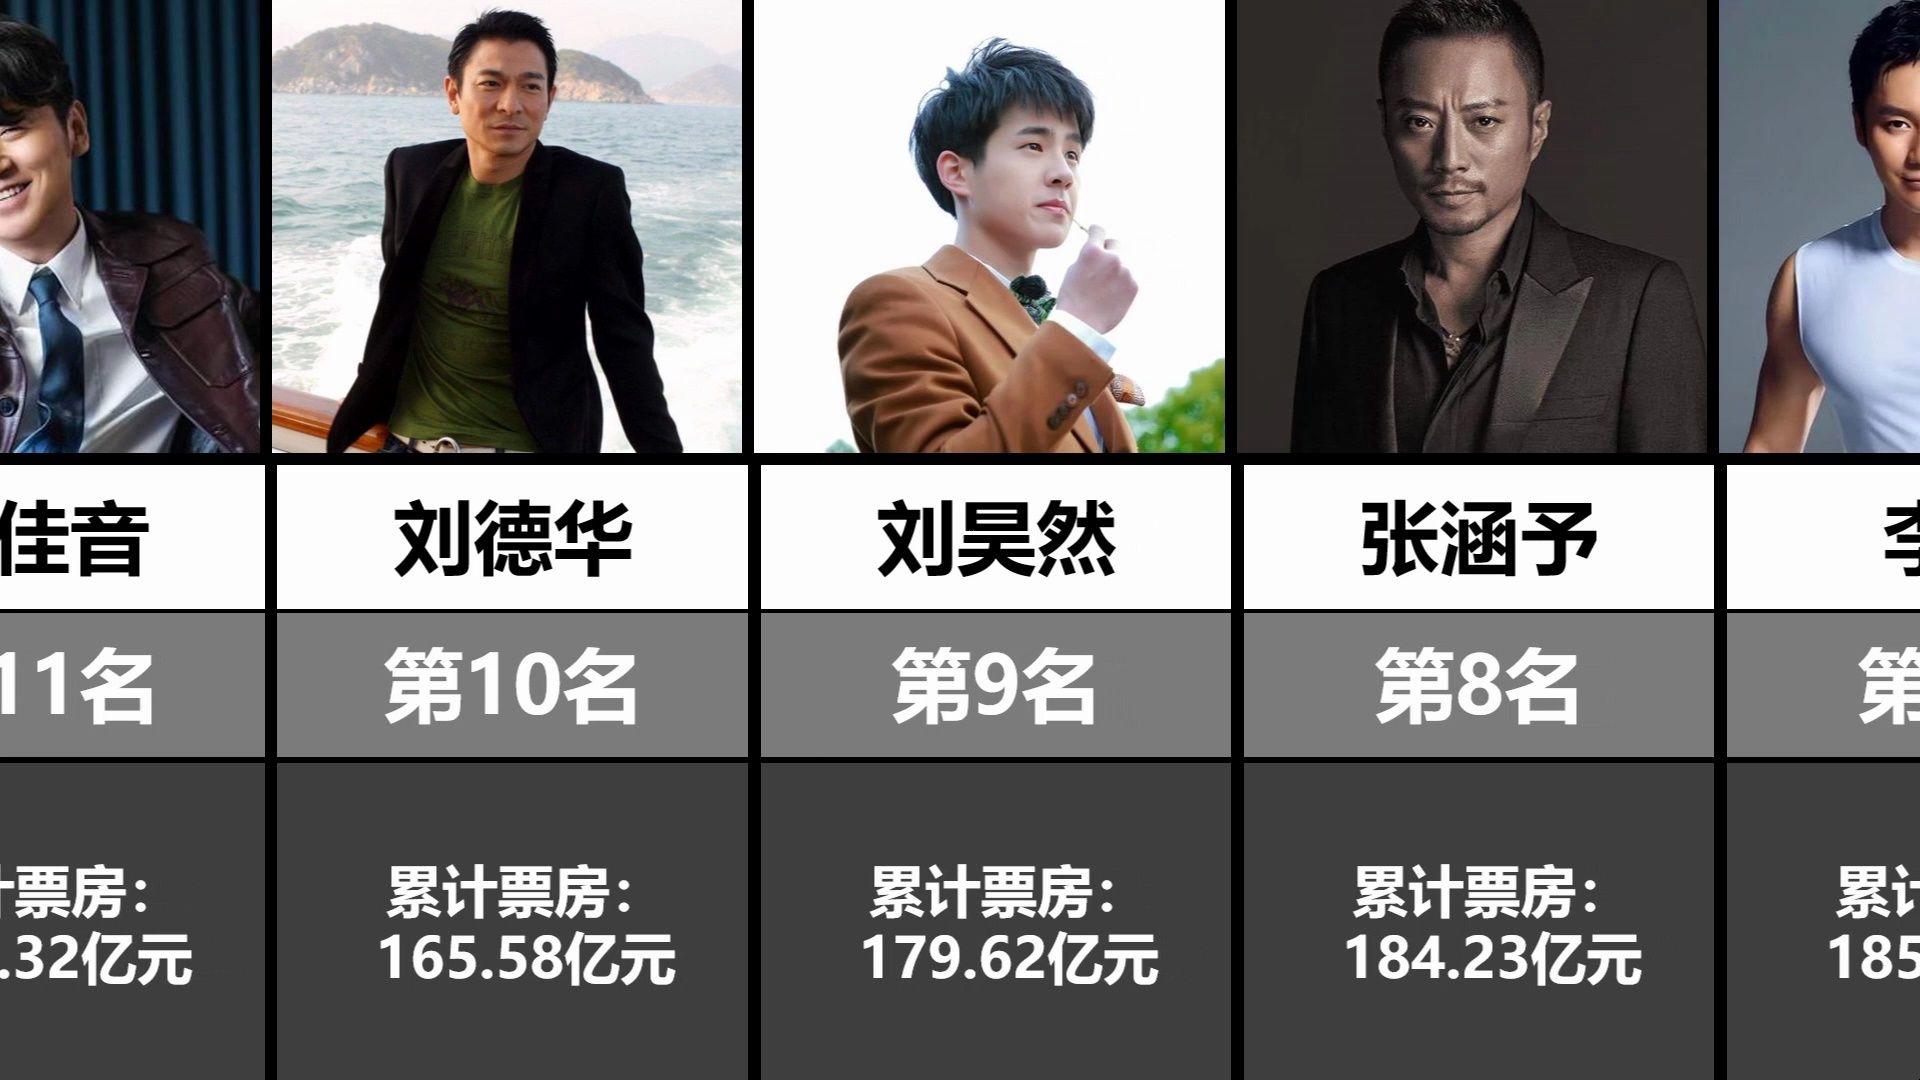 中国男演员票房排行榜TOP20